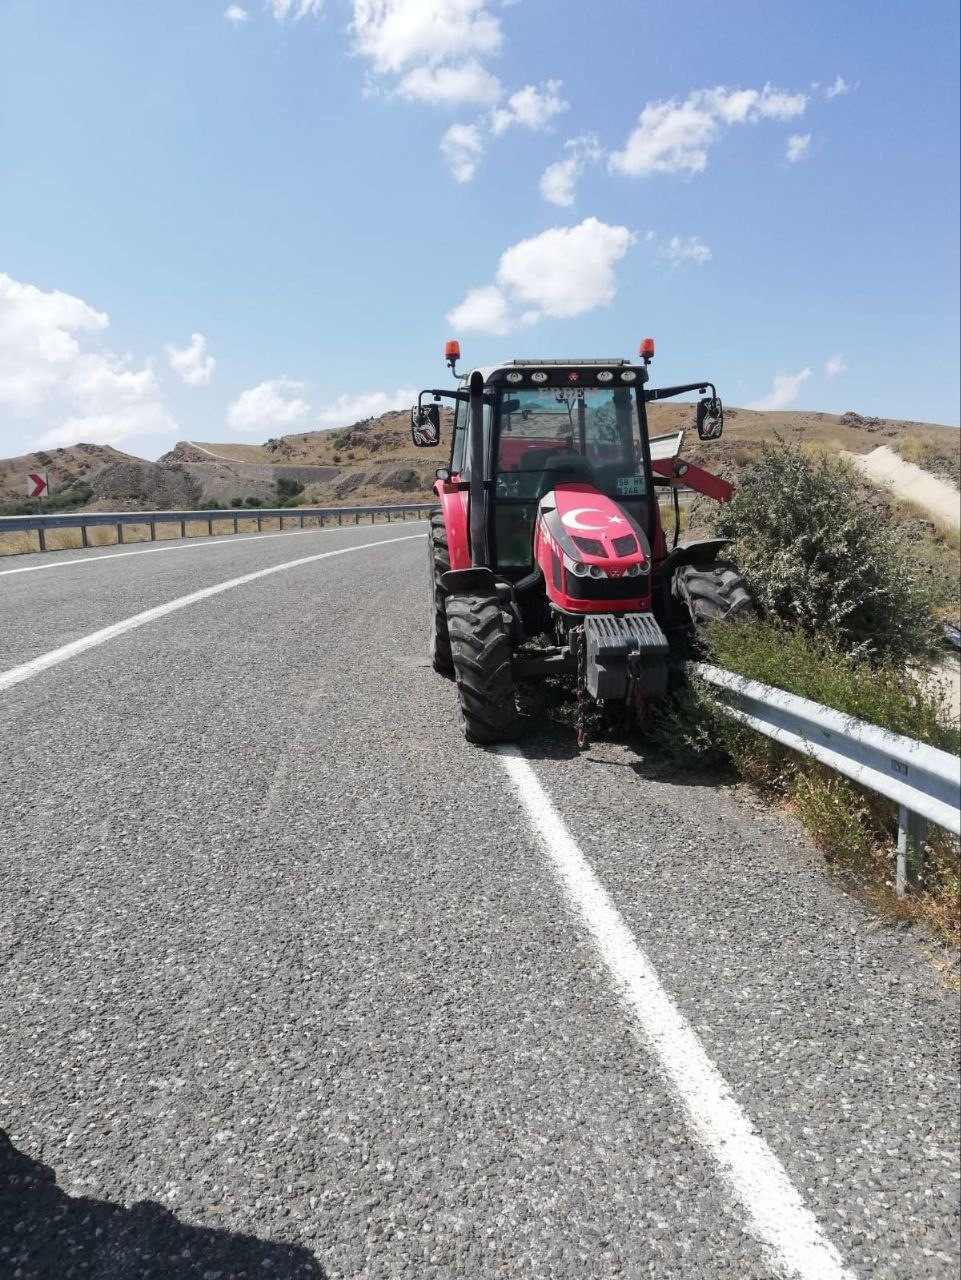 2023/07/traktorun-freni-bosaldi-4-yarali-20230724AW94-1.jpg